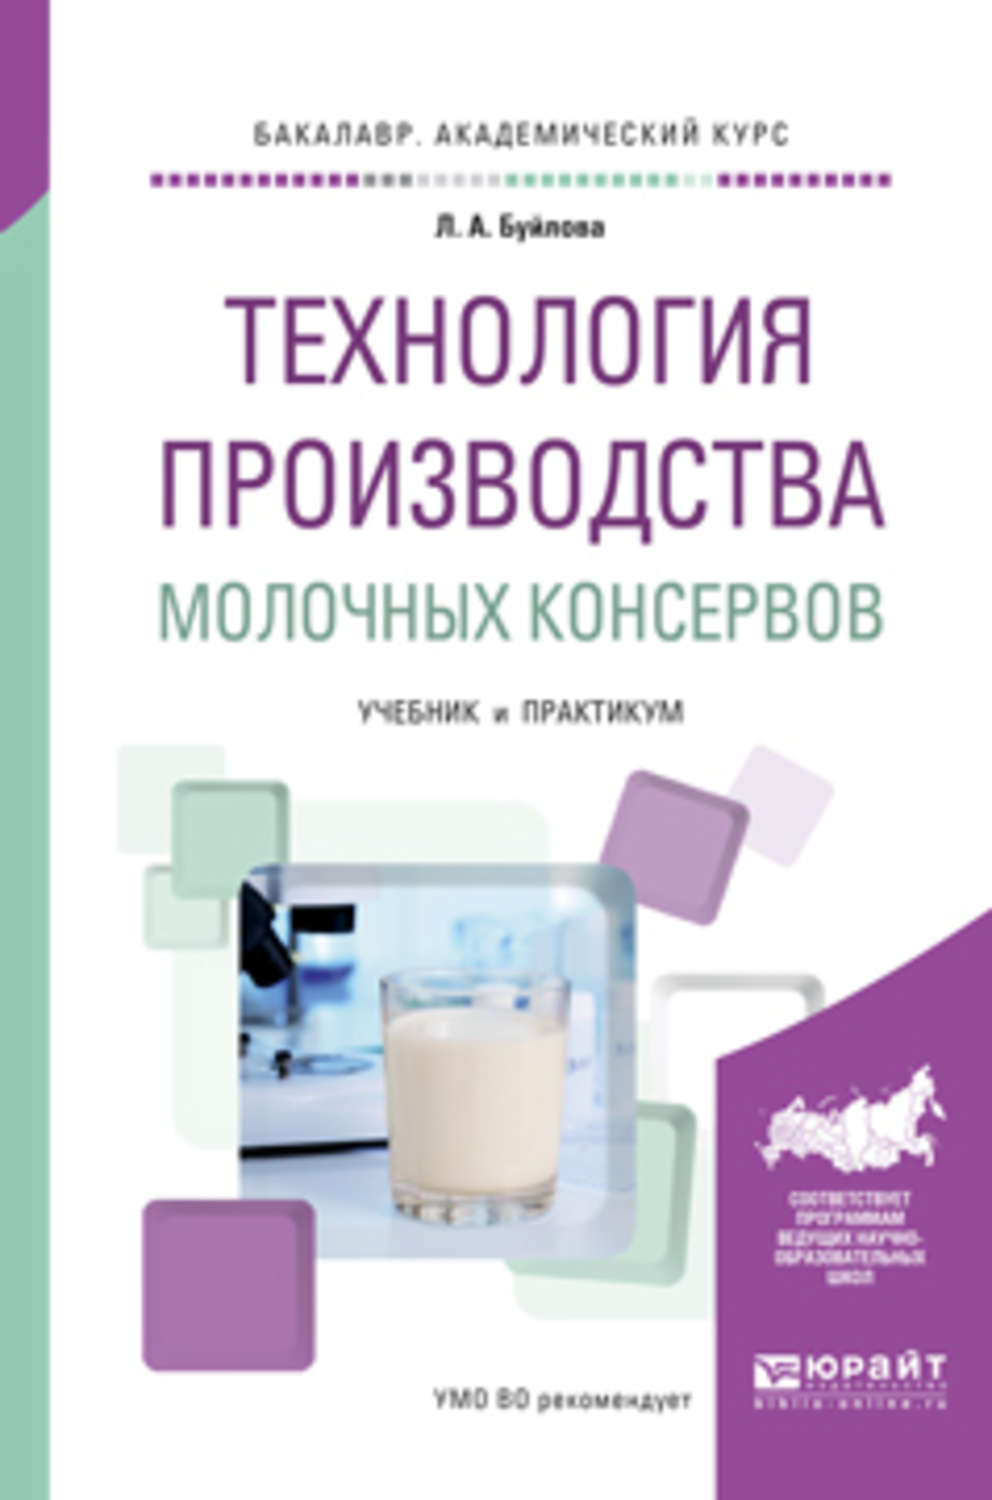 Учебное пособие: Технология молочных консервов